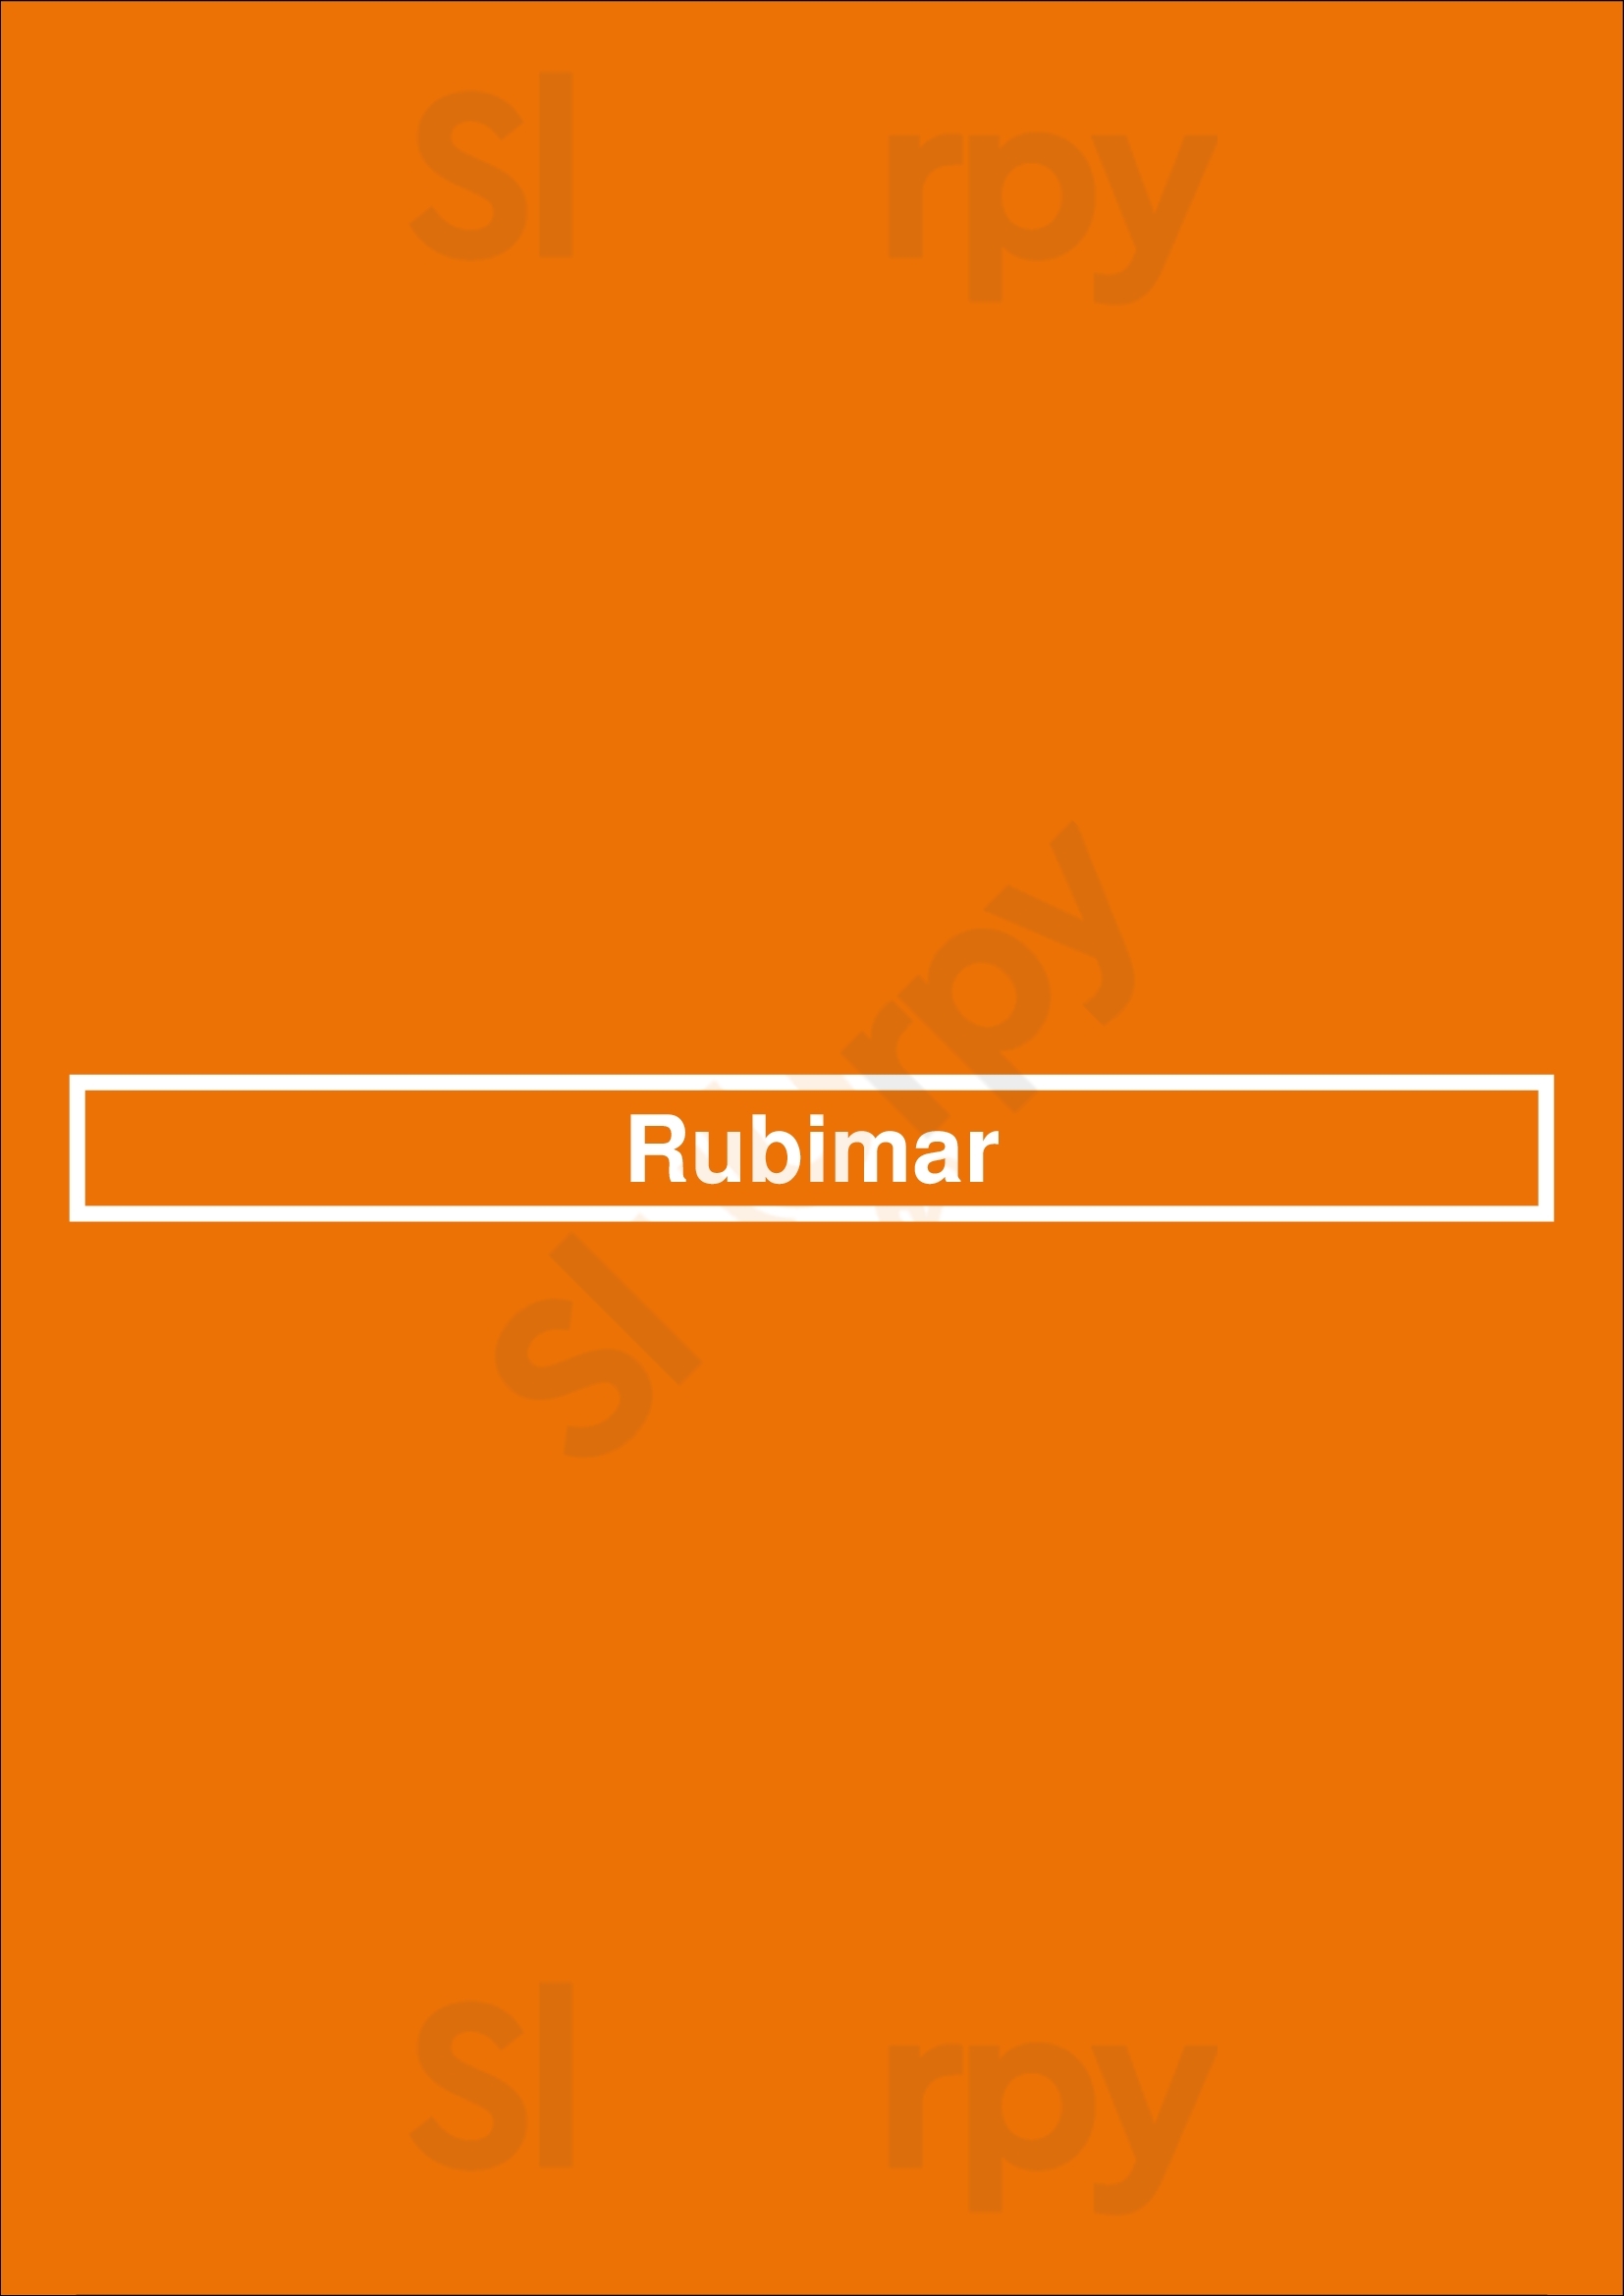 Rubimar Madrid Menu - 1